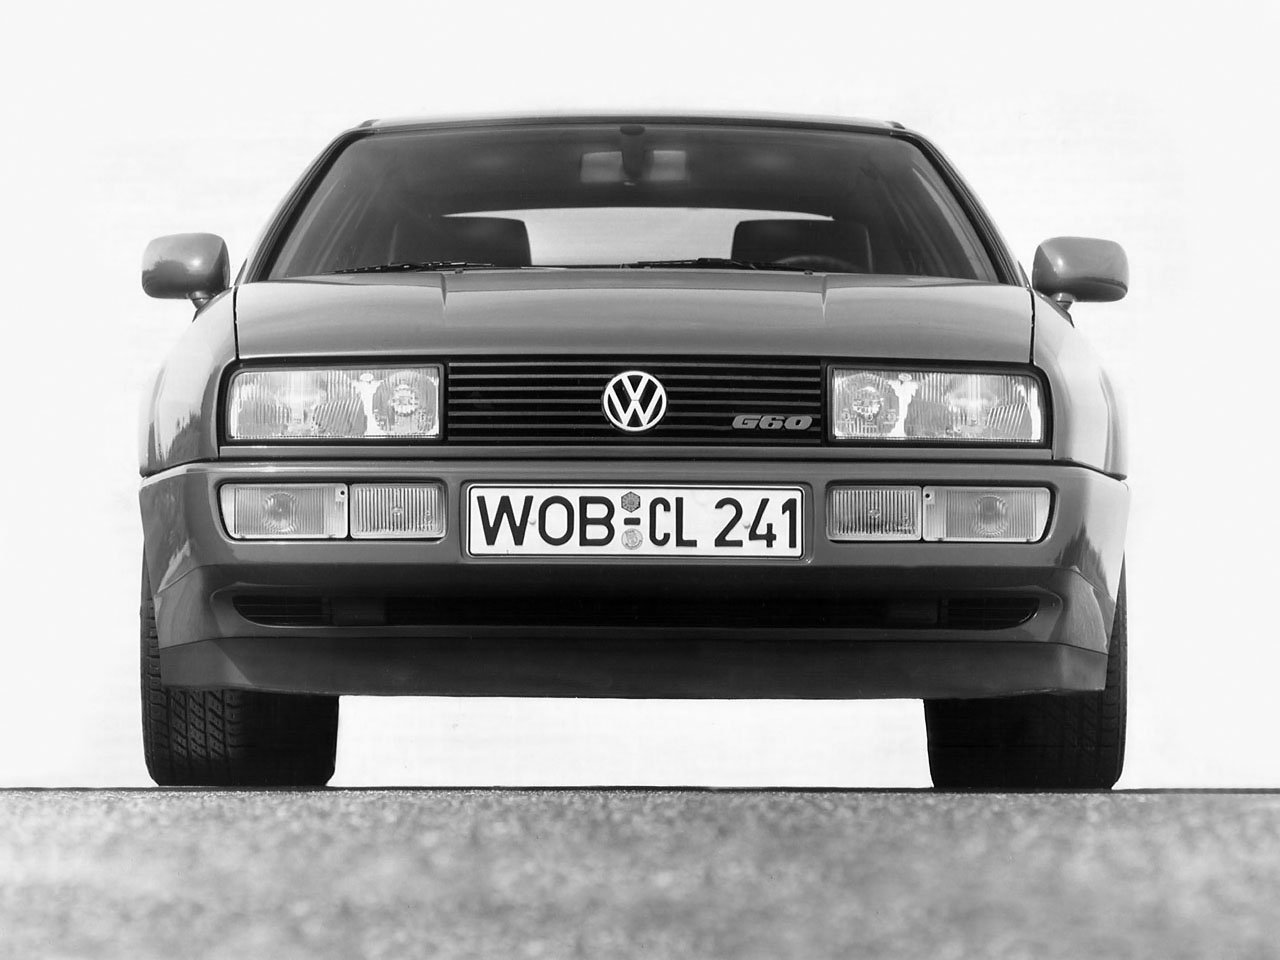 хэтчбек 3 дв. Volkswagen Corrado 1988 - 1995г выпуска модификация 1.8 AT (136 л.с.)